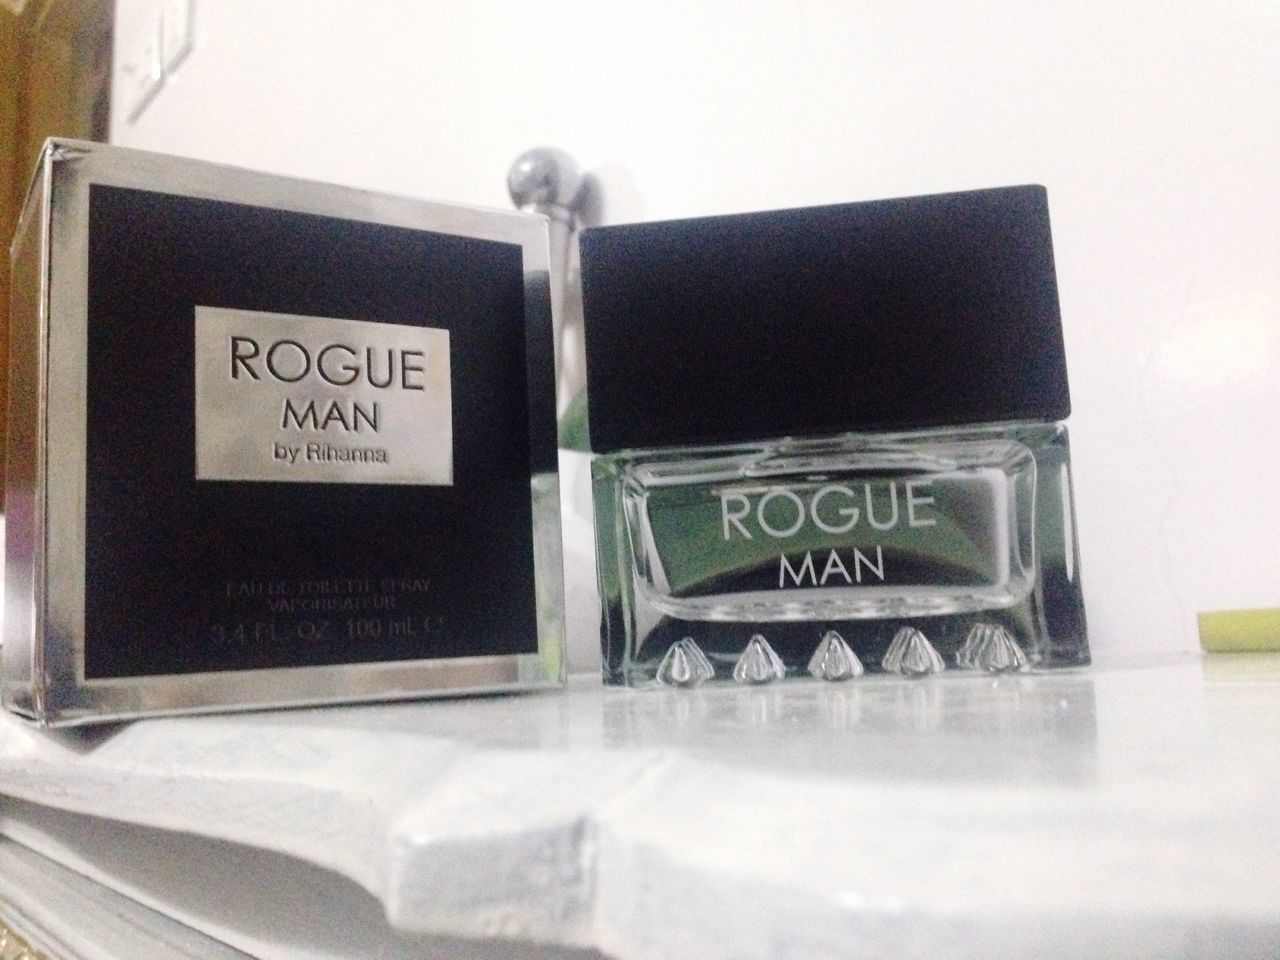 Rogue man